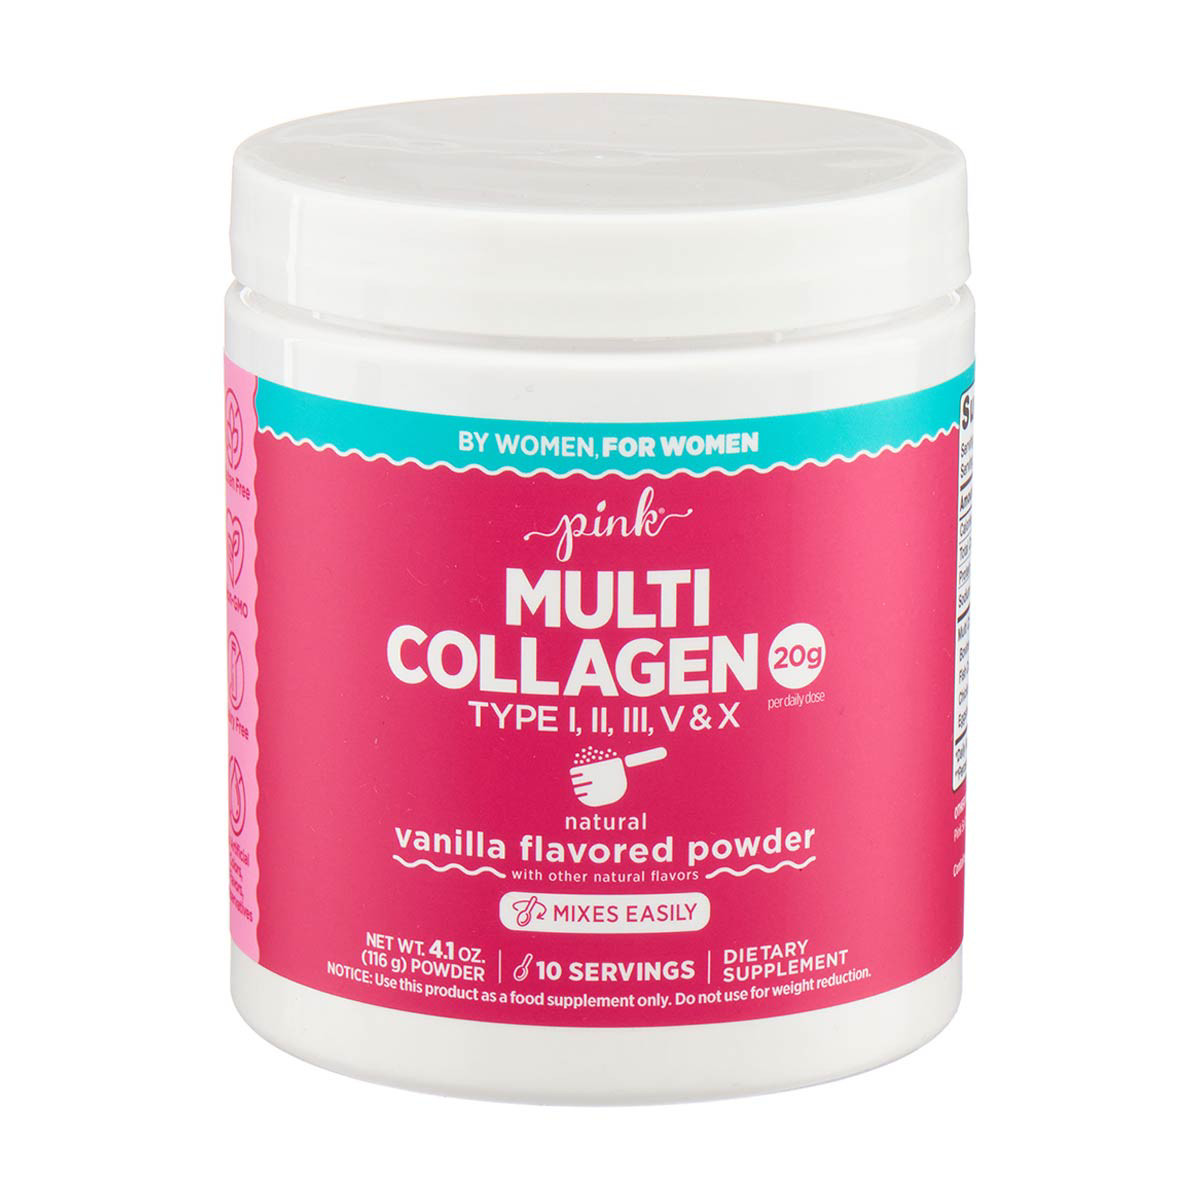 Pink Multi Collagen Vanilla Flavored Powder, 4.1 oz